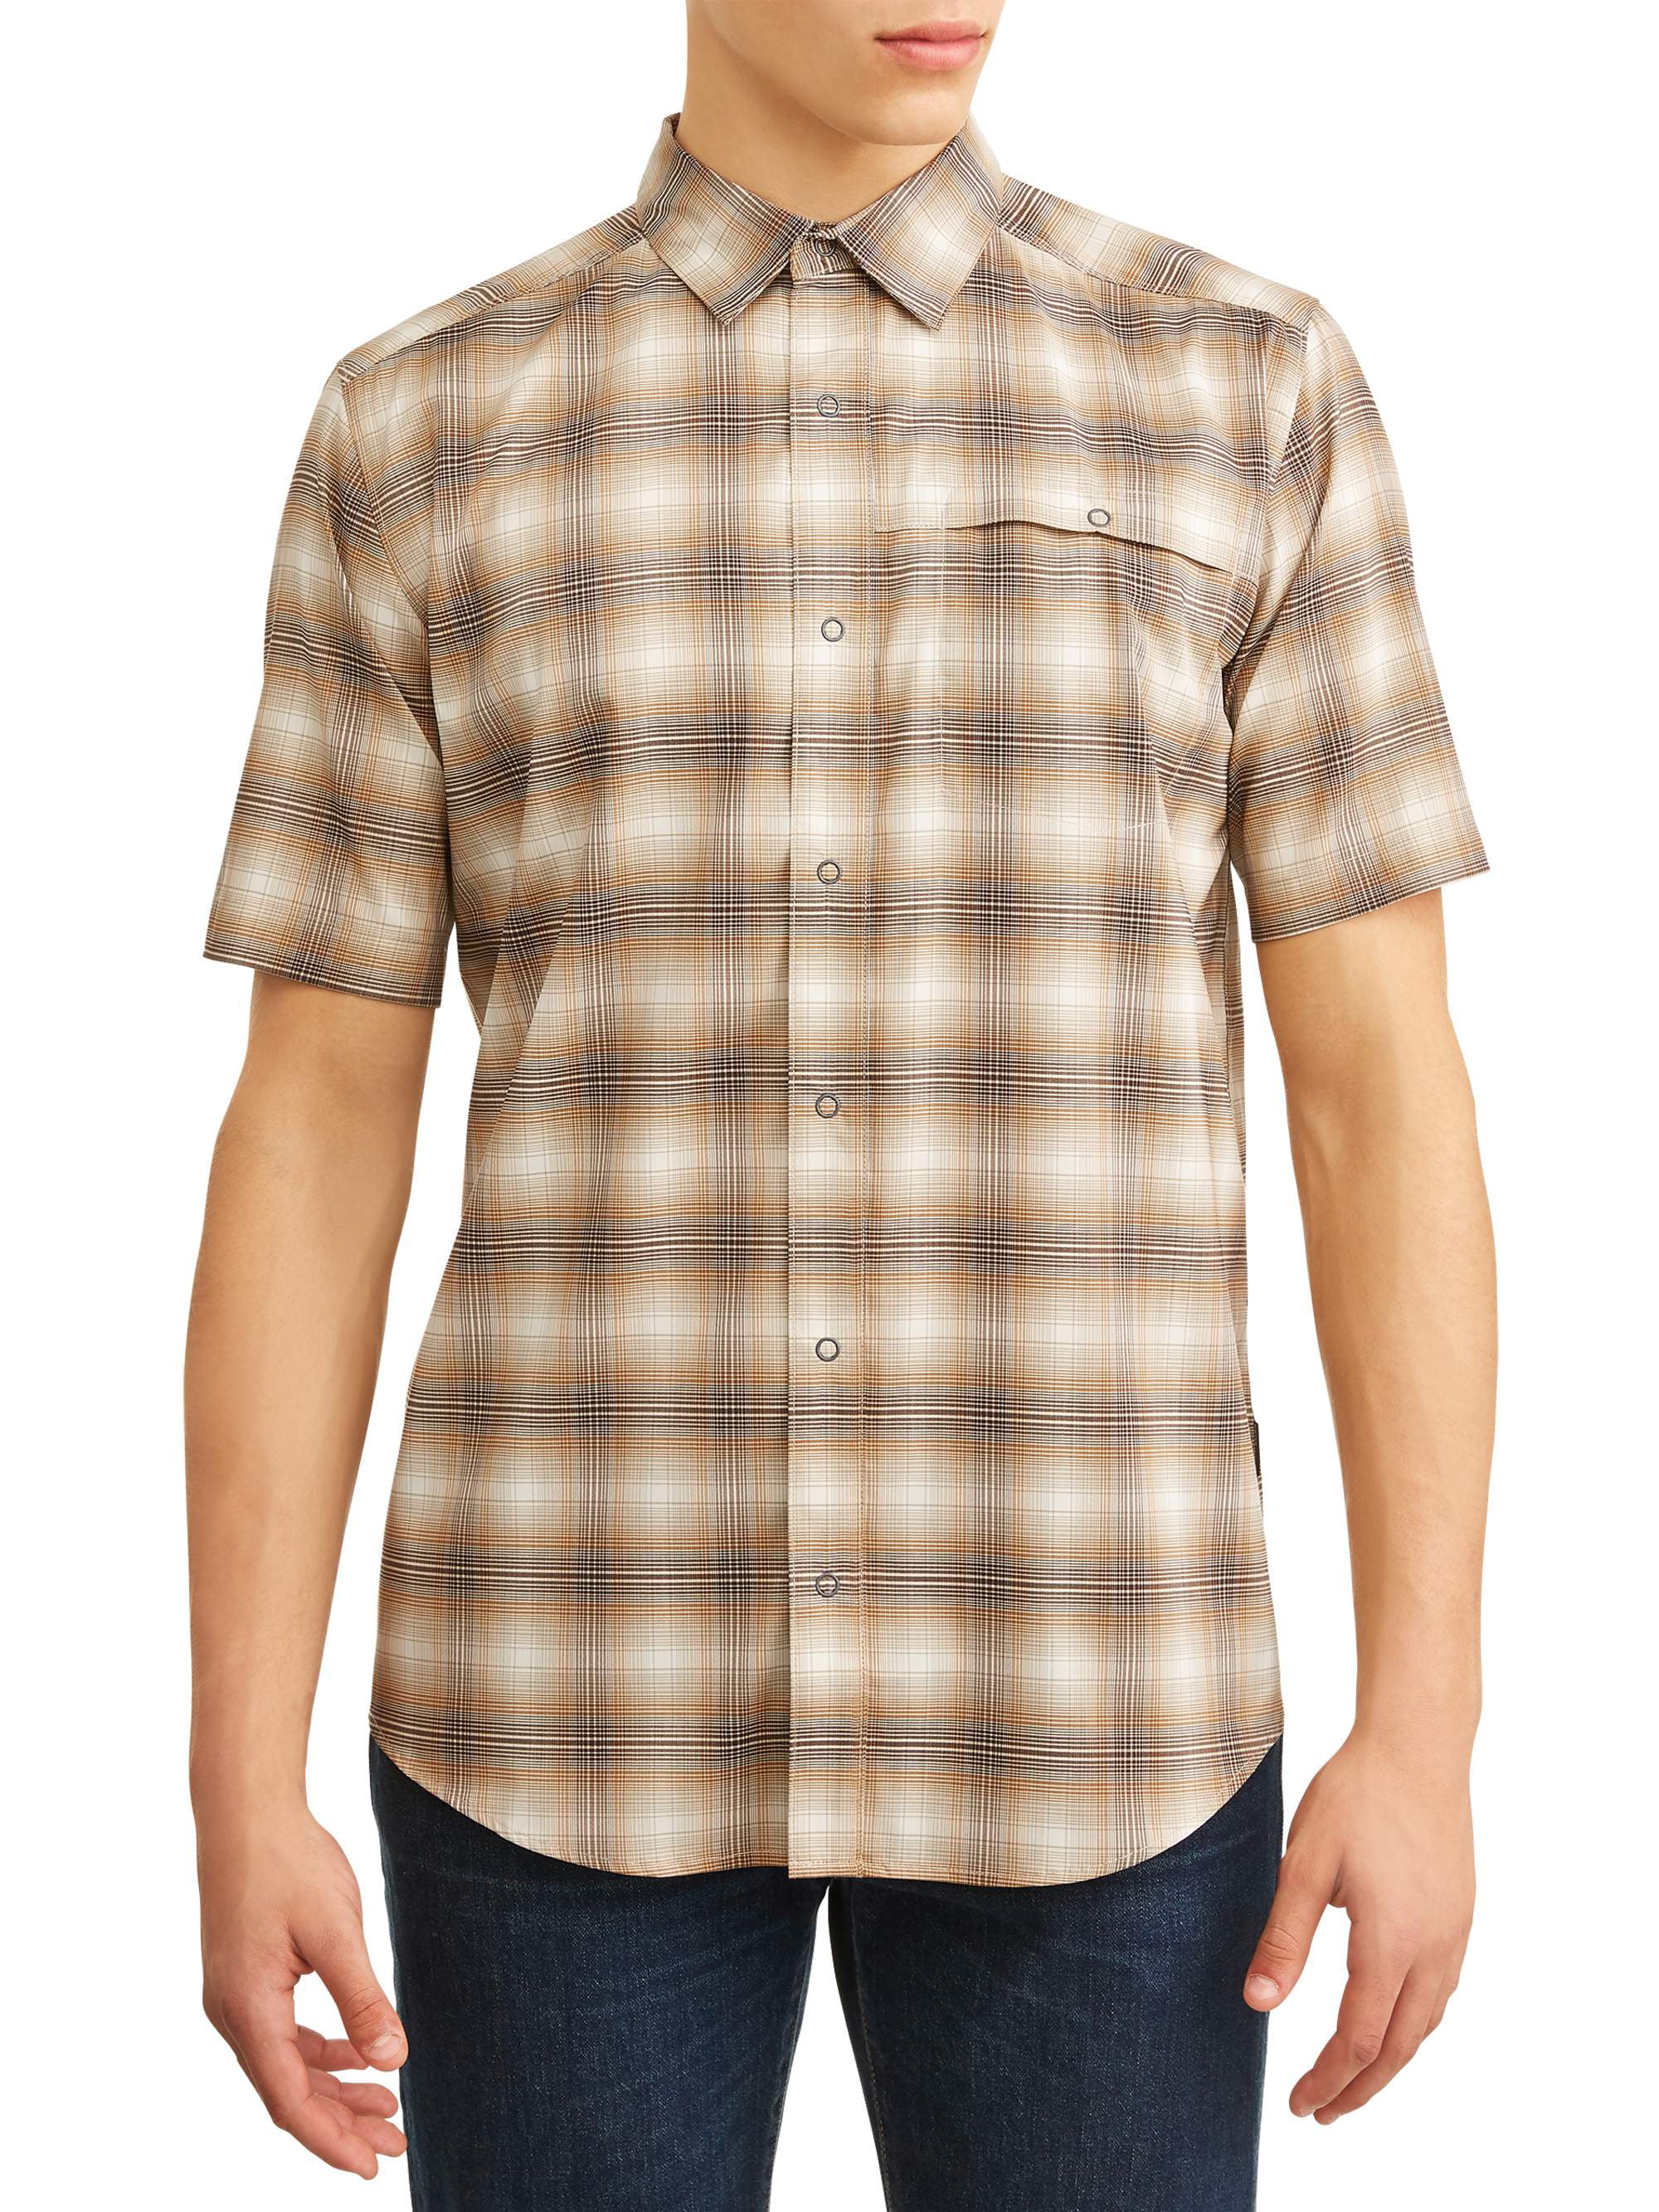 Swiss Tech Men’s Short Sleeve Outdoor Shirt - Walmart.com